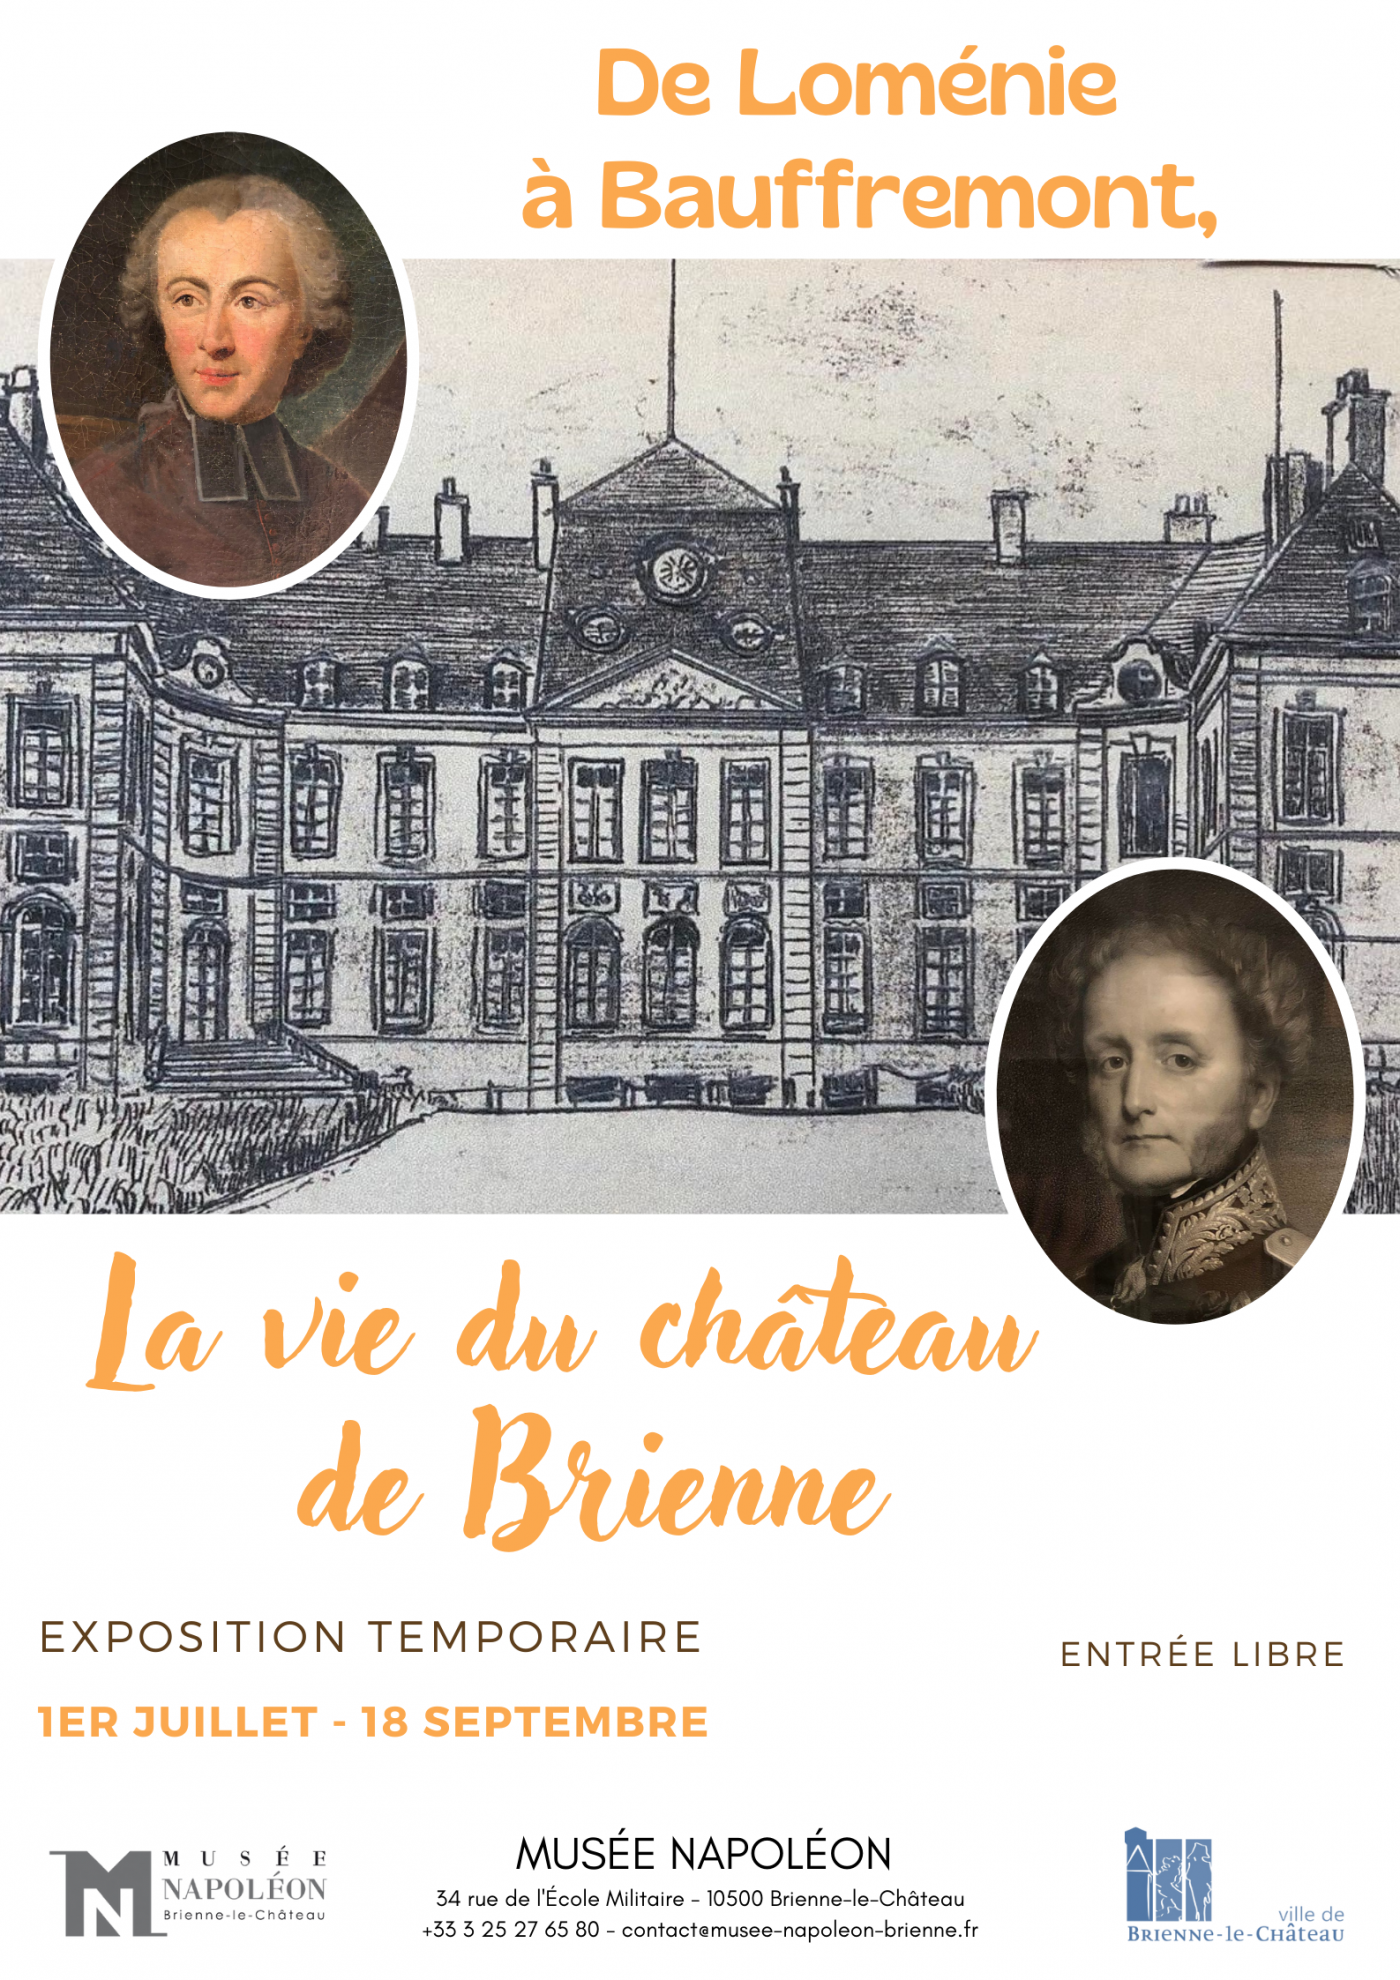 Exposition temporaire "De Loménie à Bauffremont, la vie du château de Brienne"